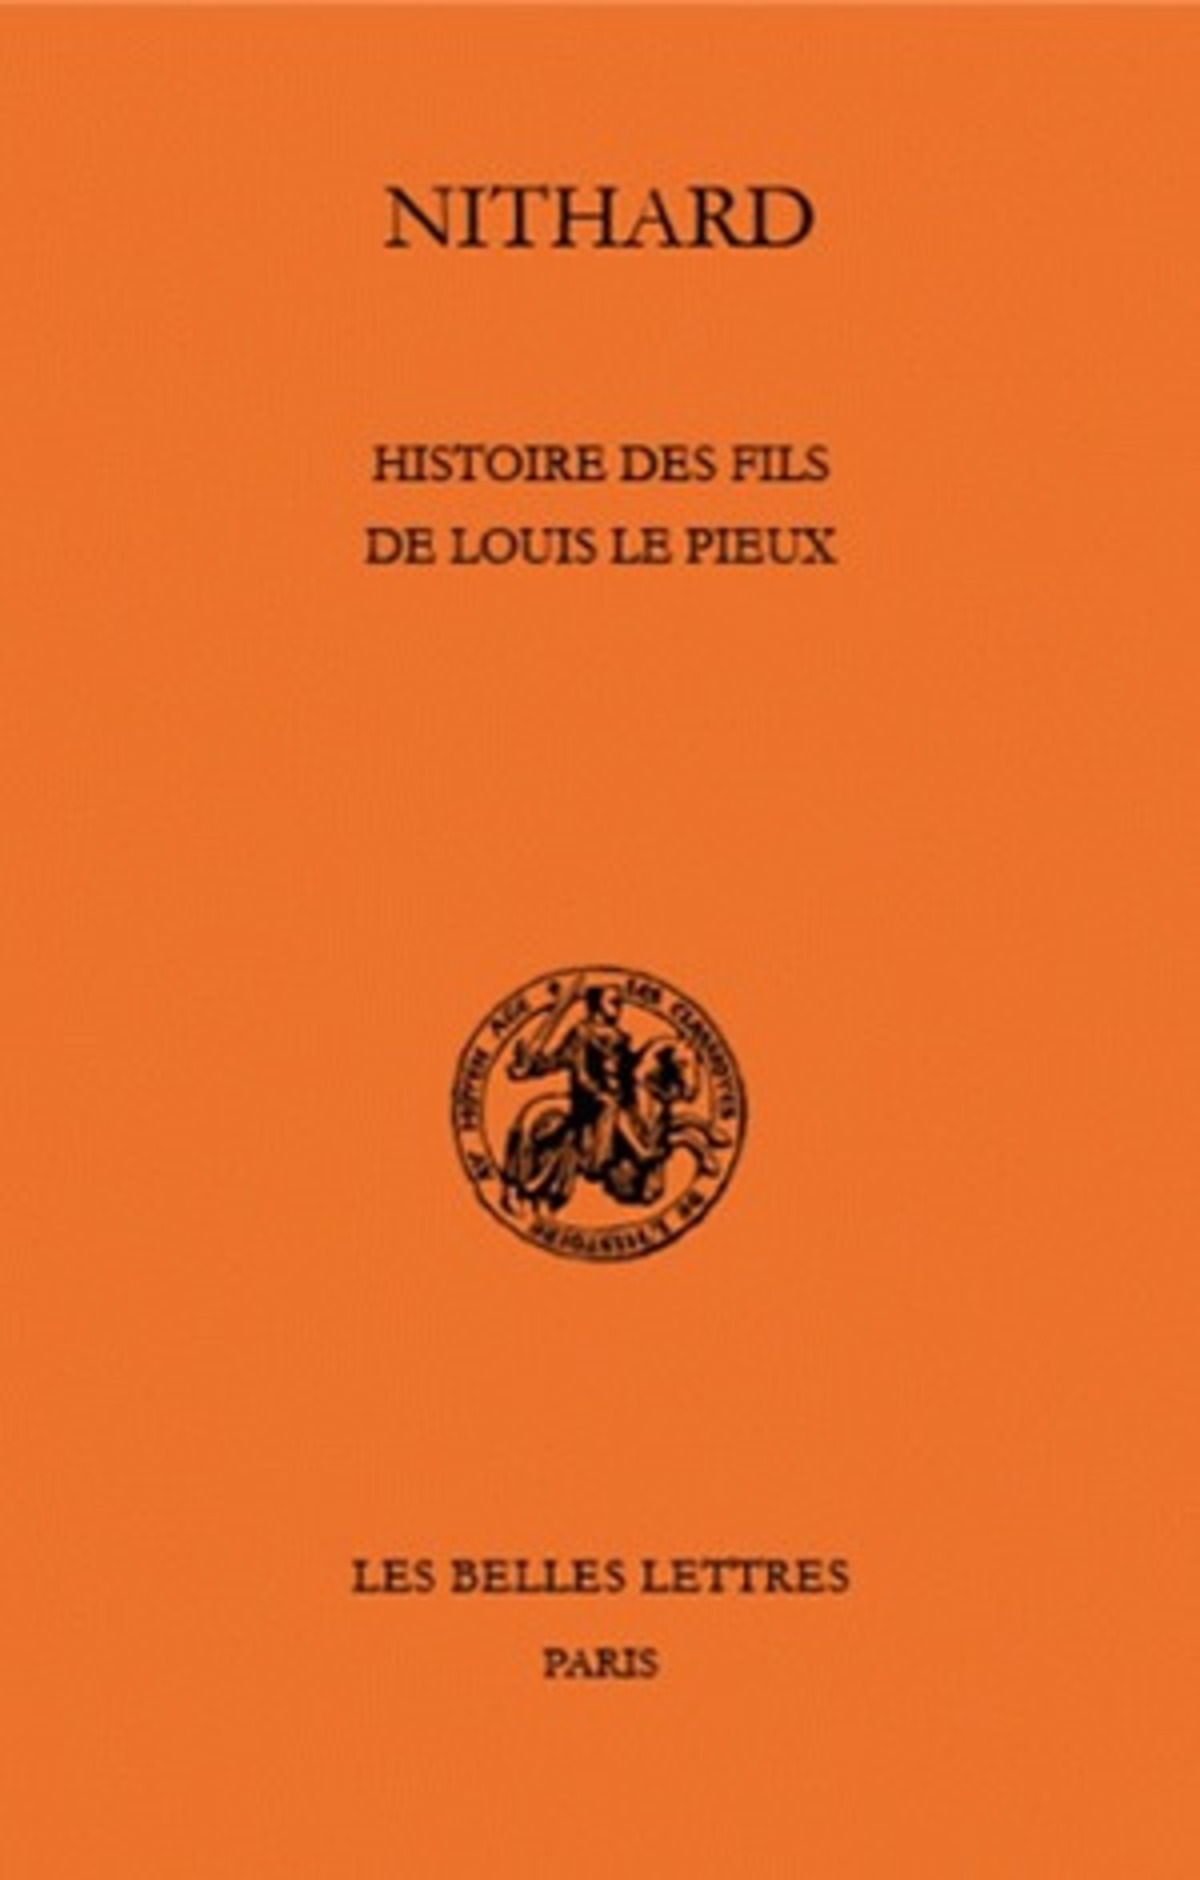 Histoire des fils de Louis le Pieux